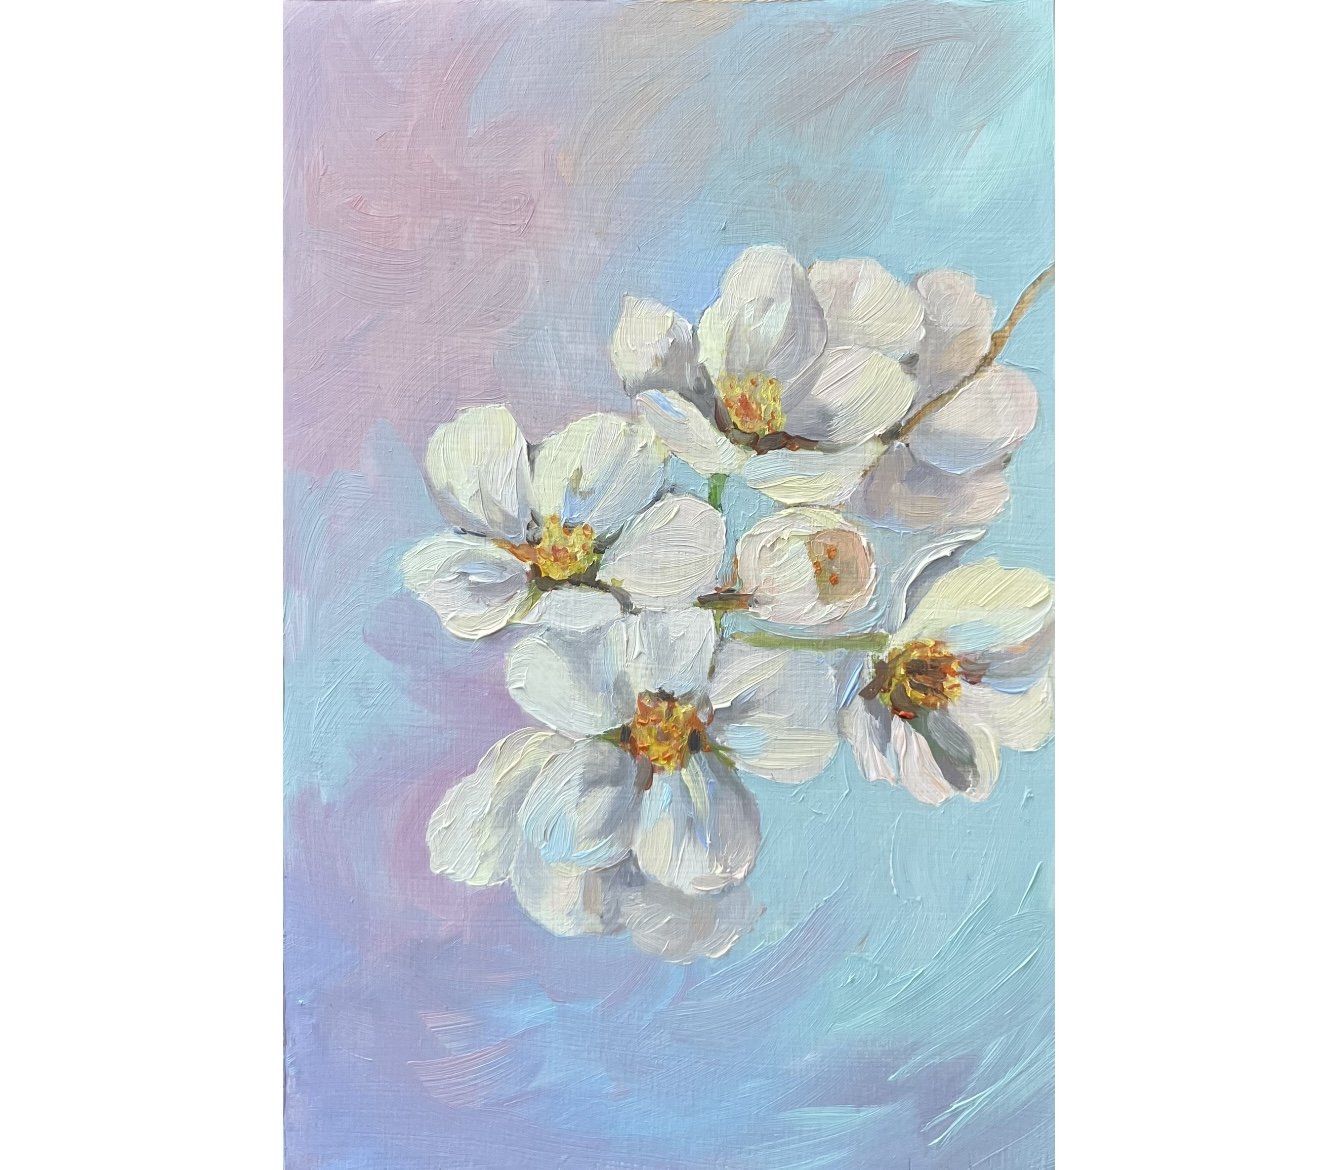 'White Cherry Blossoms' - 4" x 6" - $150